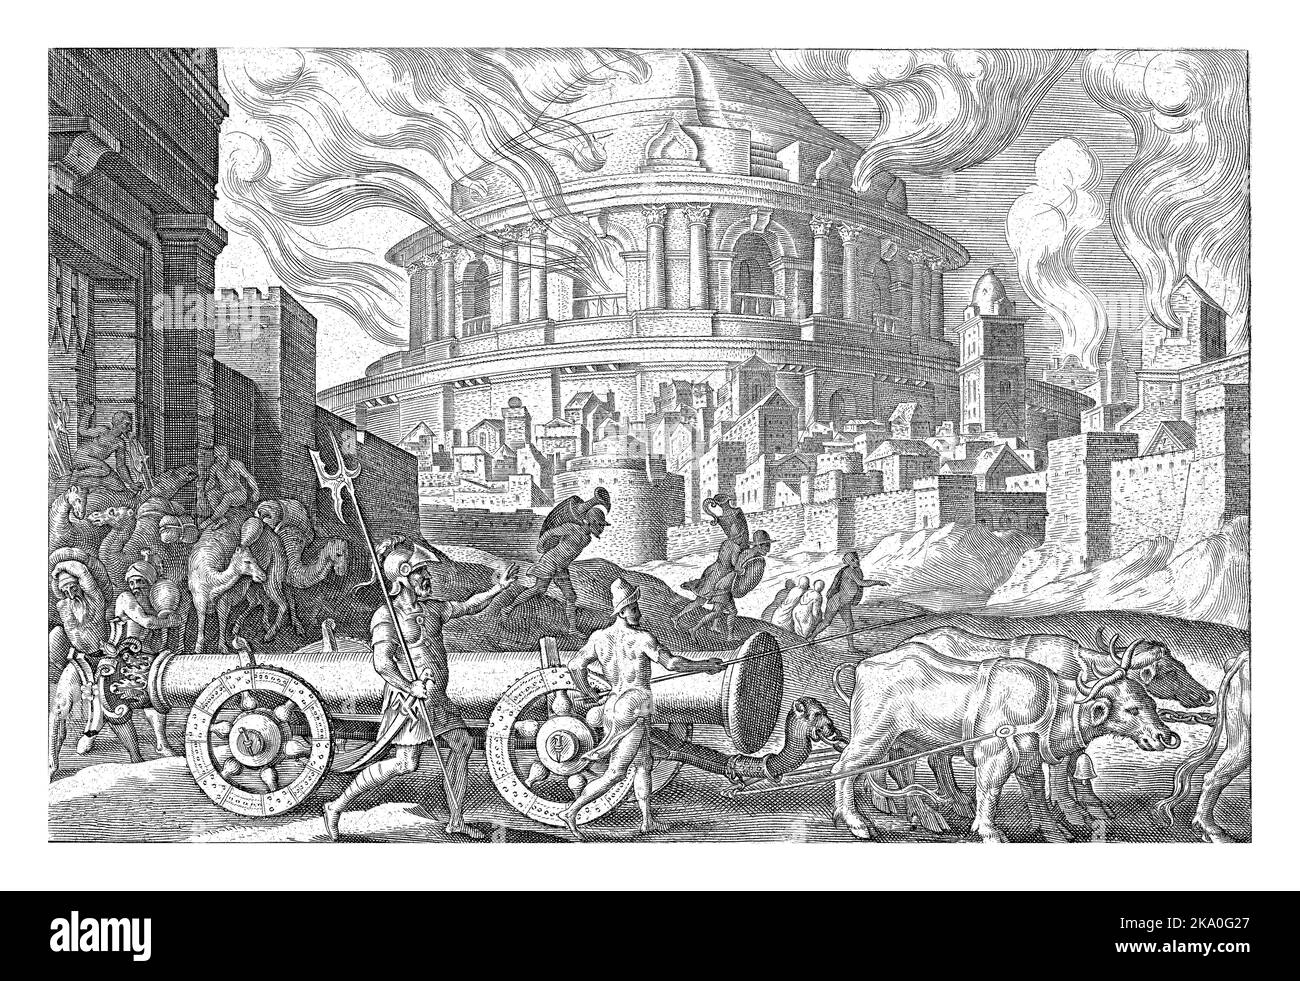 Sullo sfondo un tempio ardente. In primo piano uomini con vasi sulla schiena e cammelli imballati Foto Stock